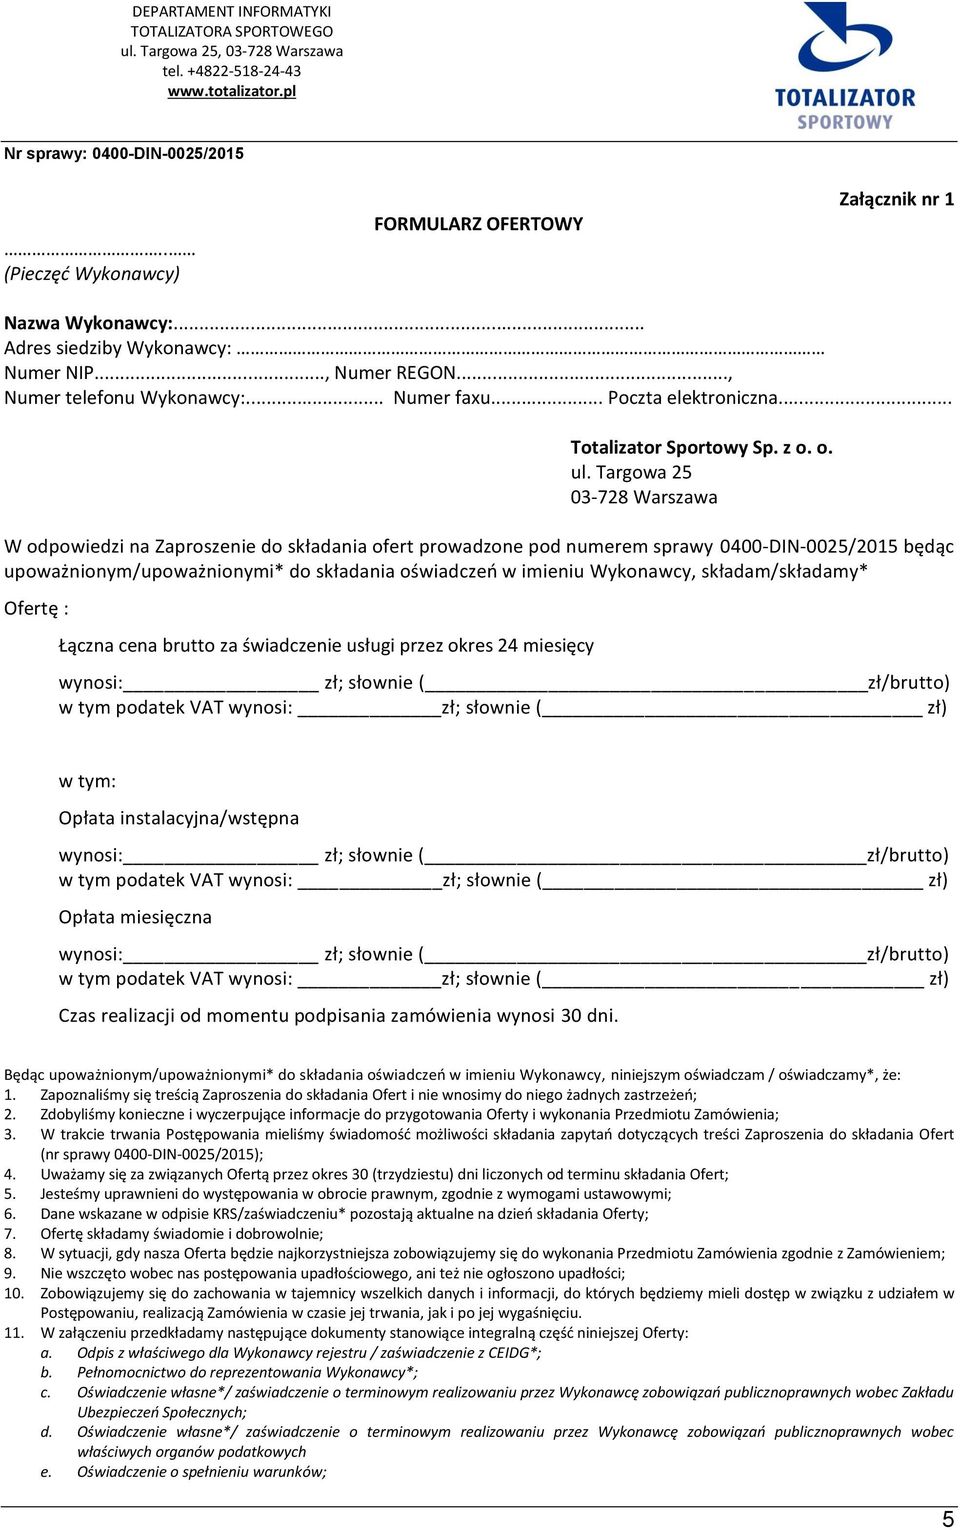 Targowa 25 03-728 Warszawa W odpowiedzi na Zaproszenie do składania ofert prowadzone pod numerem sprawy 0400-DIN-0025/2015 będąc upoważnionym/upoważnionymi* do składania oświadczeń w imieniu